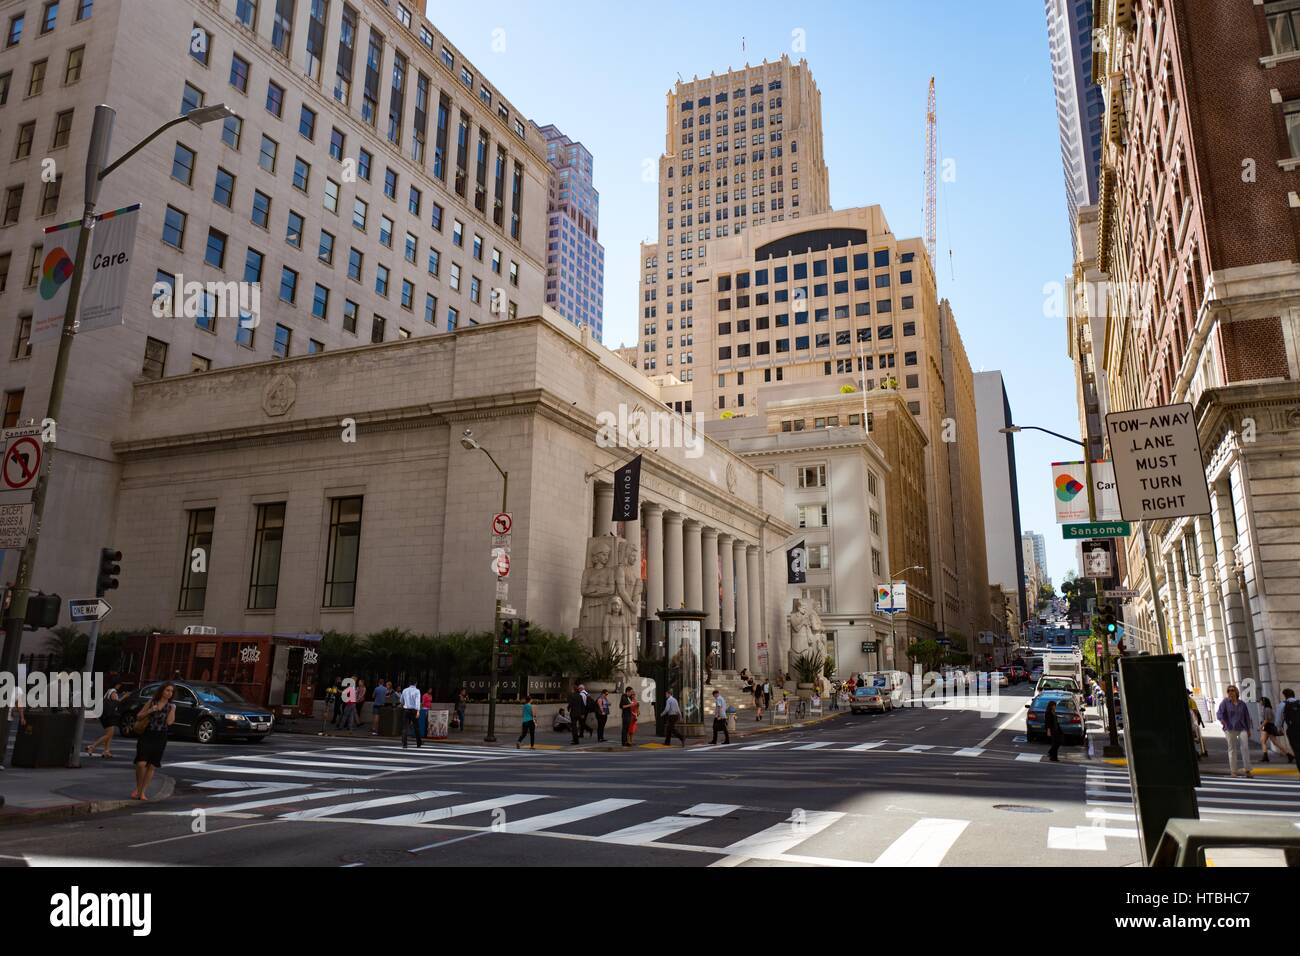 Menschen überqueren Sansome Street, mit ehemaligen Pacific Coast Börsengebäude sichtbar, in der Nähe der Financial District von San Francisco, Kalifornien, 26. September 2016. Stockfoto